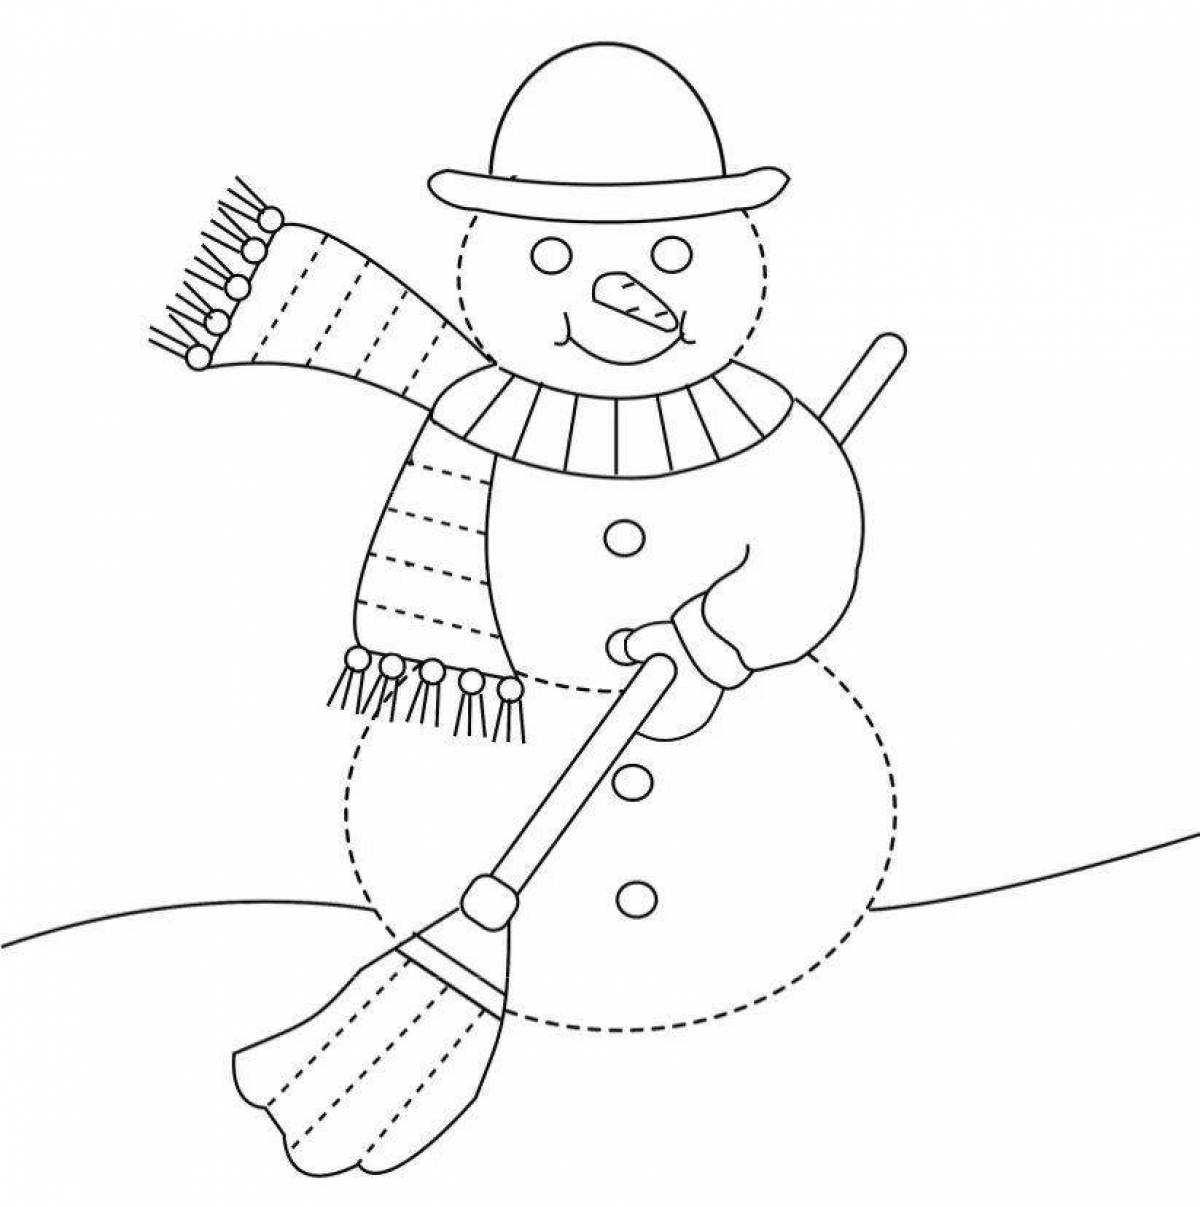 Сверкающая раскраска снеговик по номерам